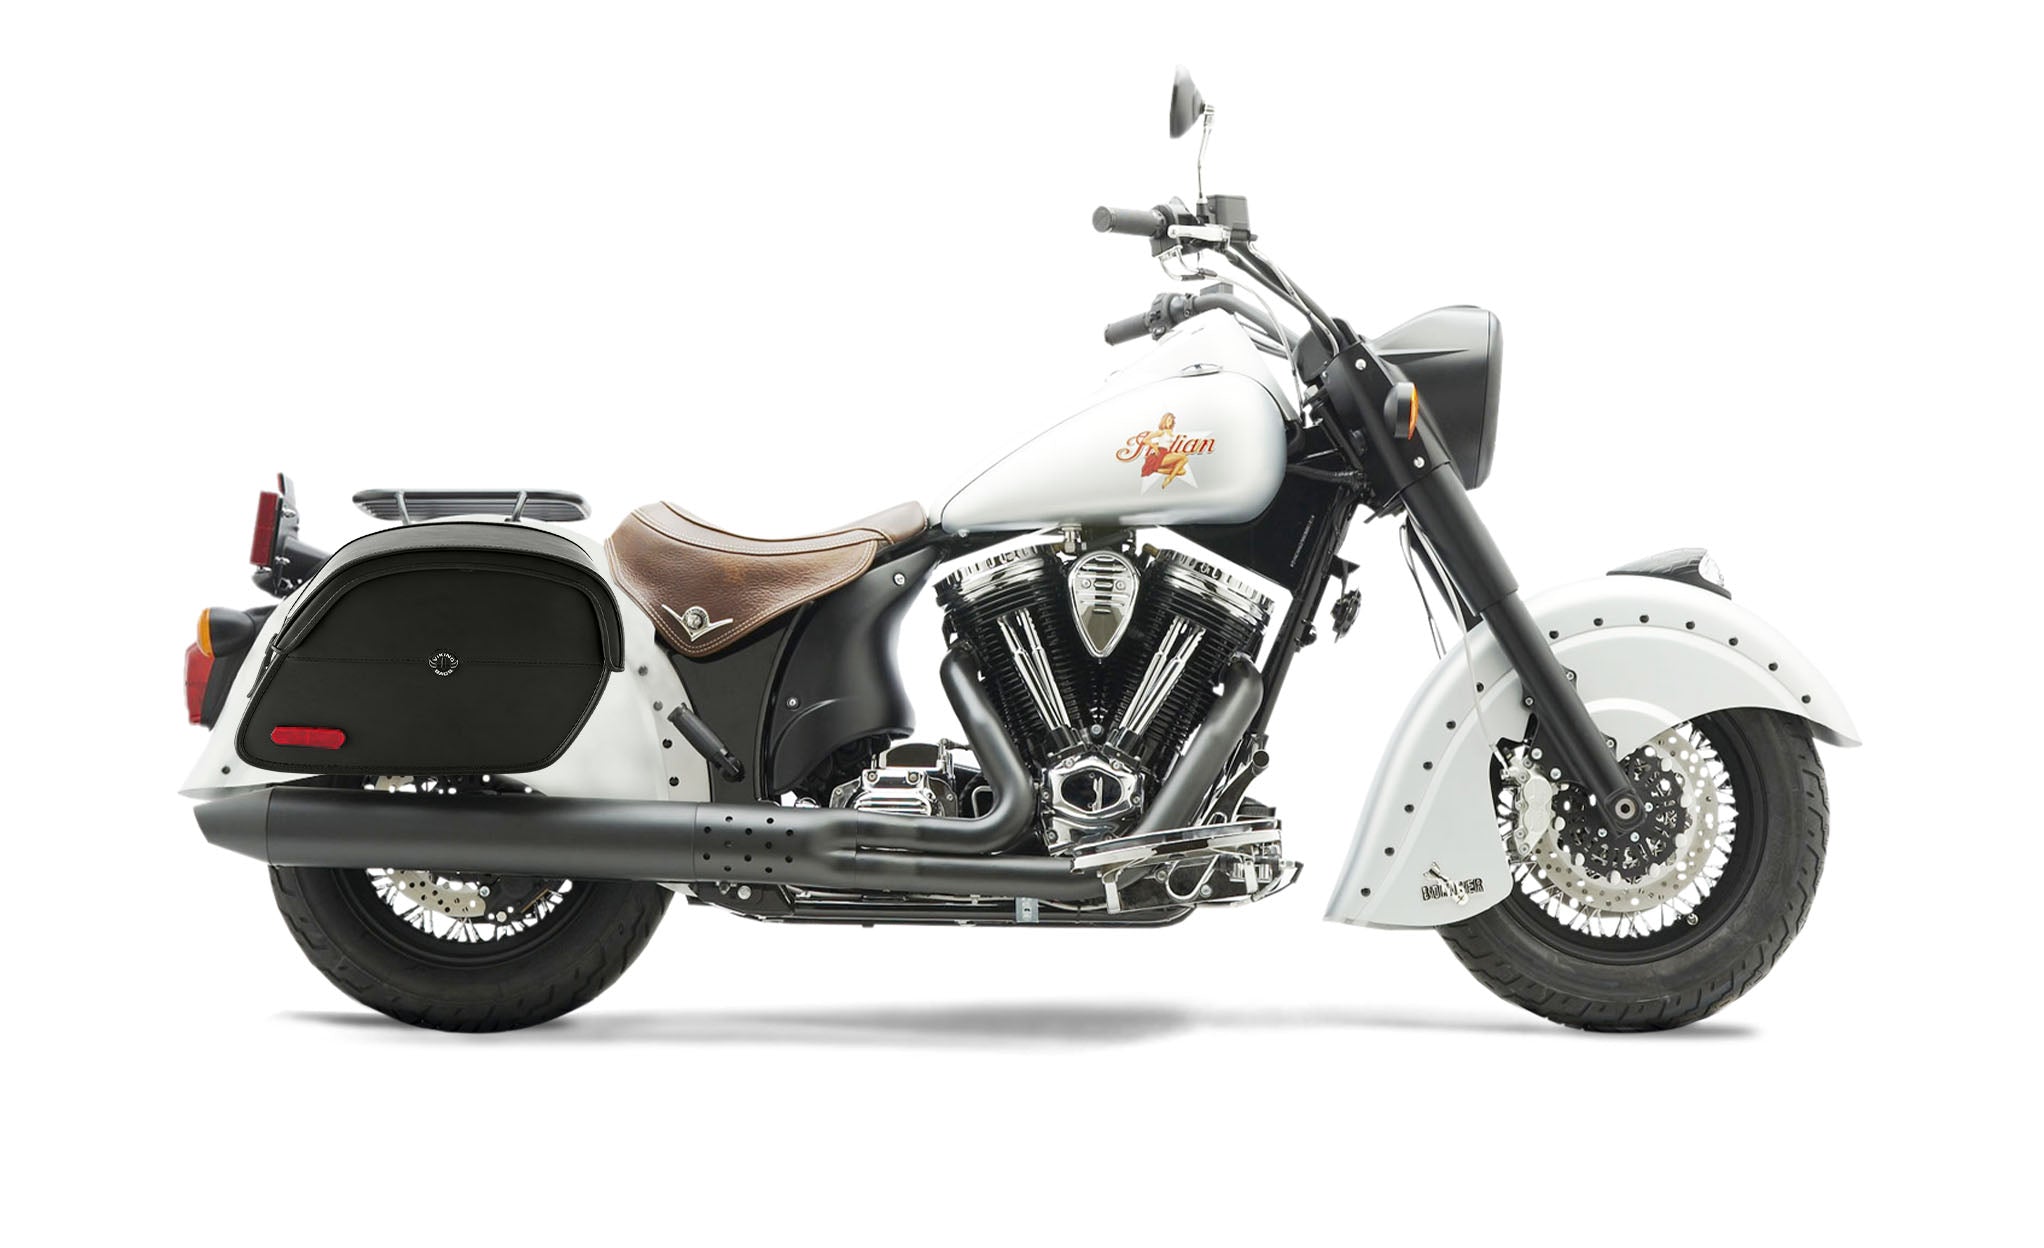 Viking California Large Indian Chief Bomber Leather Motorcycle Saddlebags on Bike Photo @expand